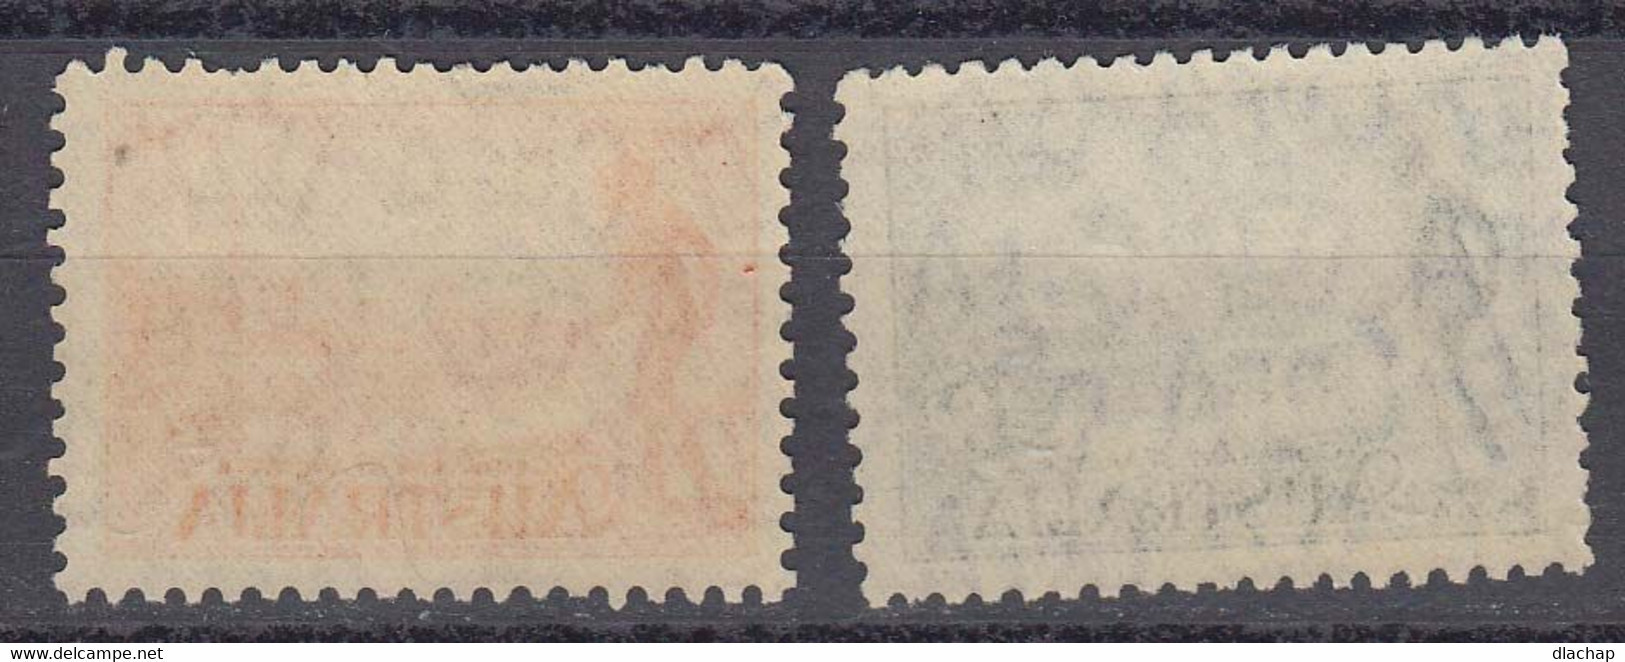 Australie 1934 Yvert Yvert 94 / 95 * Neufs Avec Charniere.Centenaire De La Colonie De Victoria. - Mint Stamps